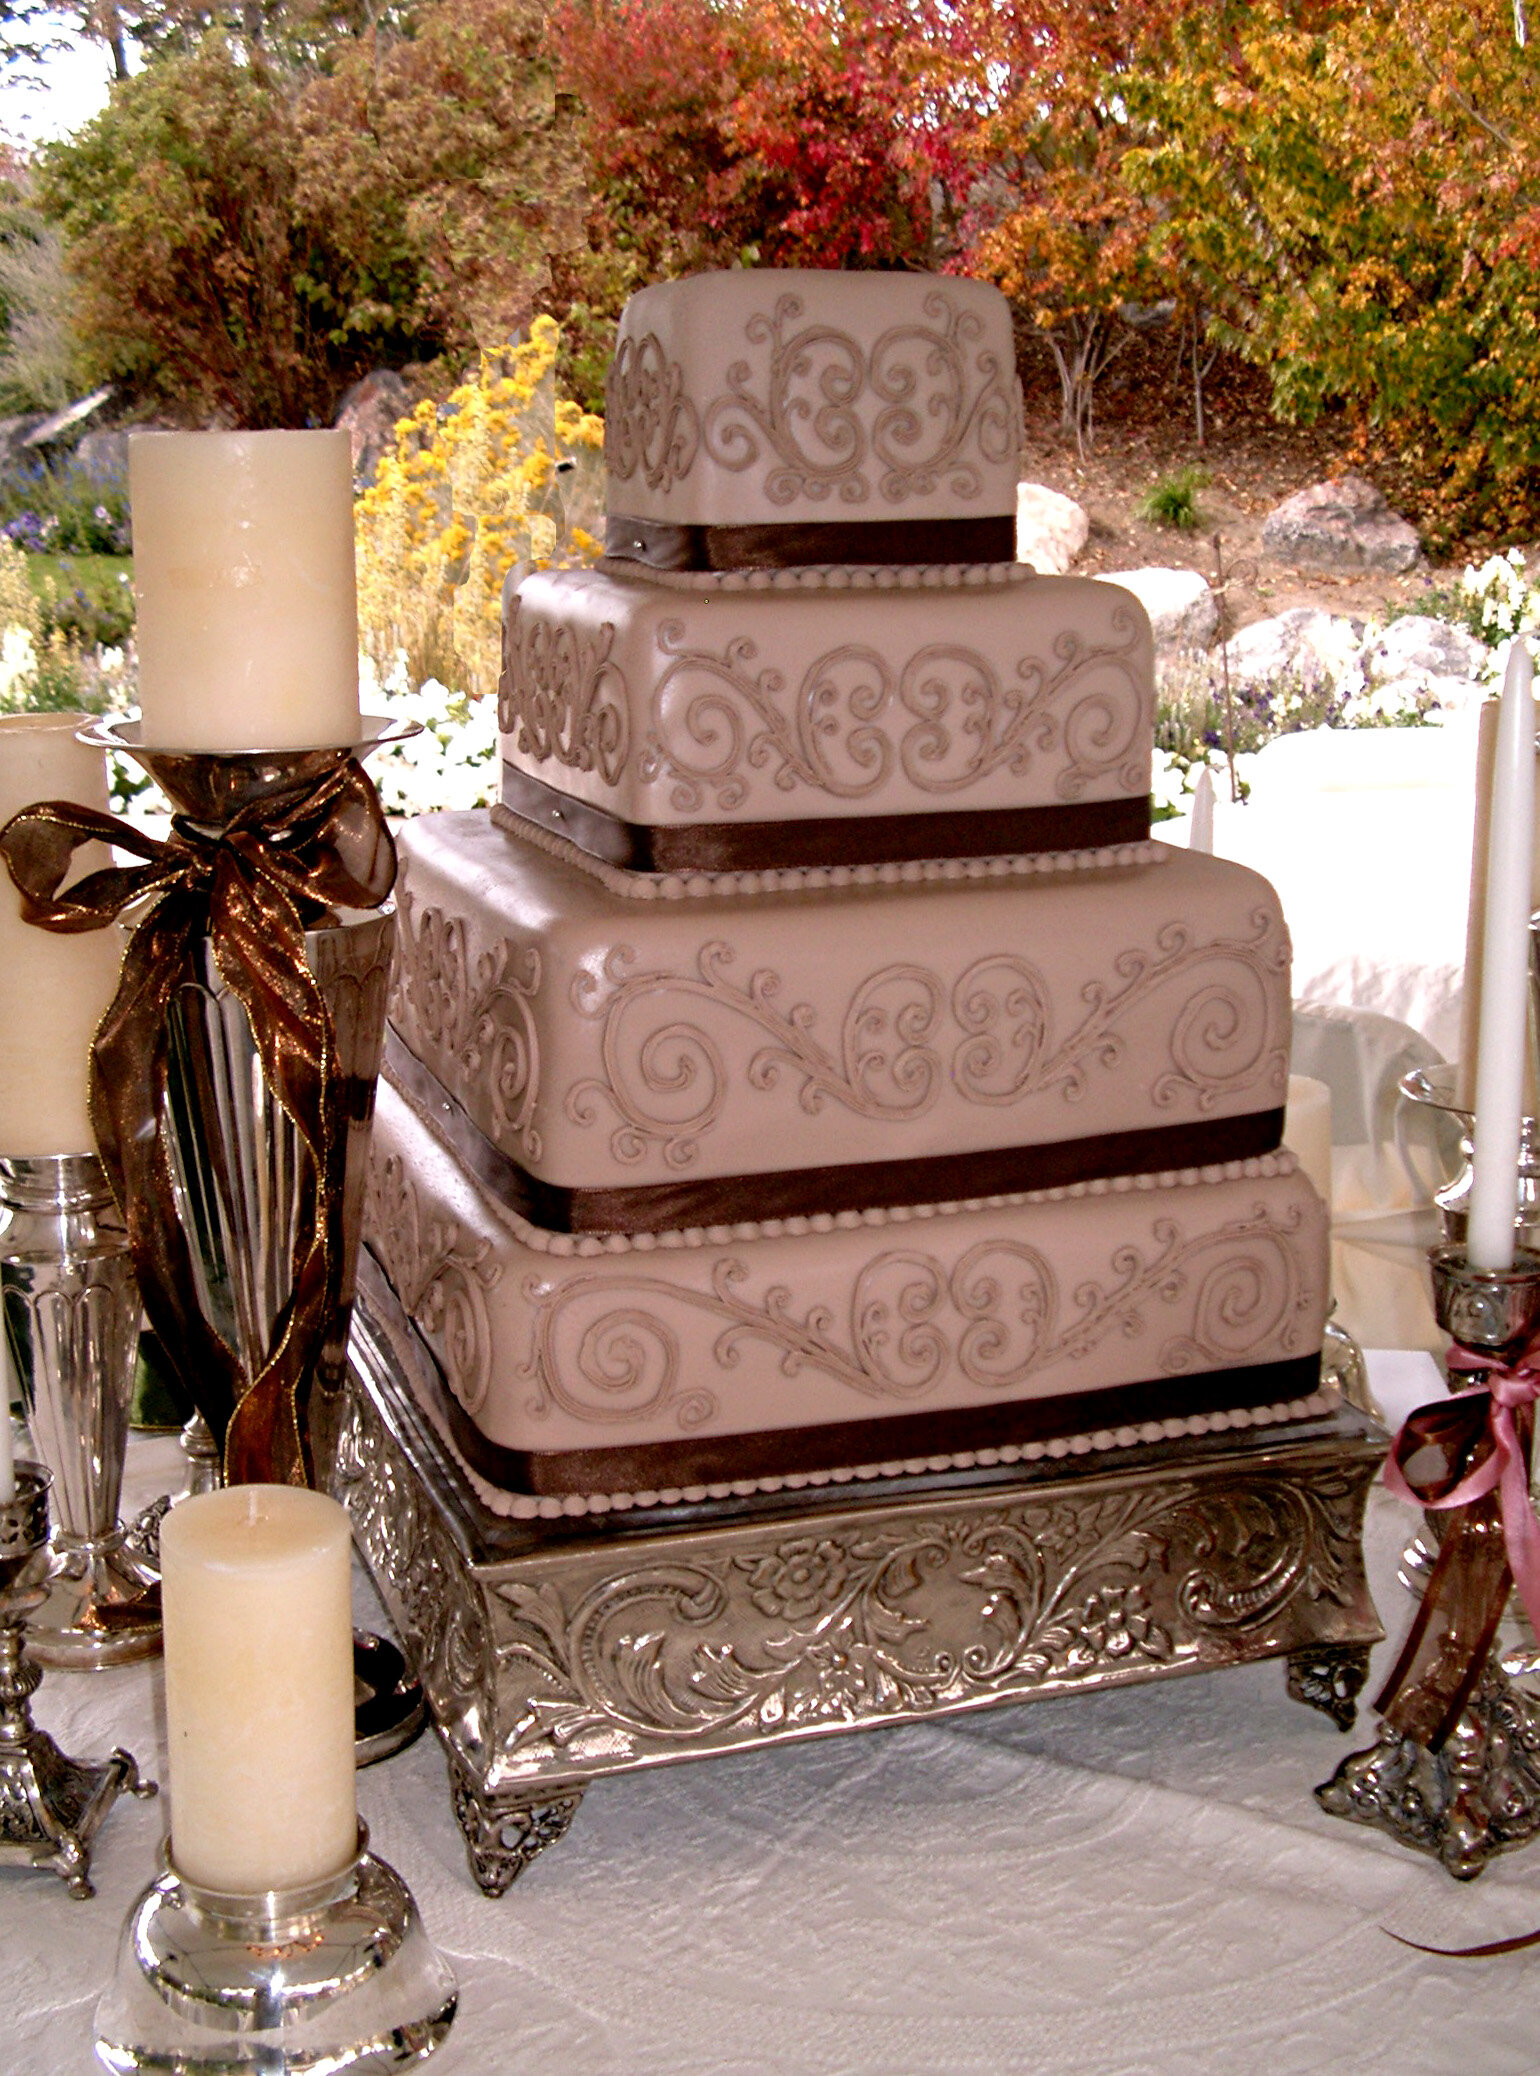 Square 3 Tier Wedding Cake with Cherry Blossom details - - CakesDecor